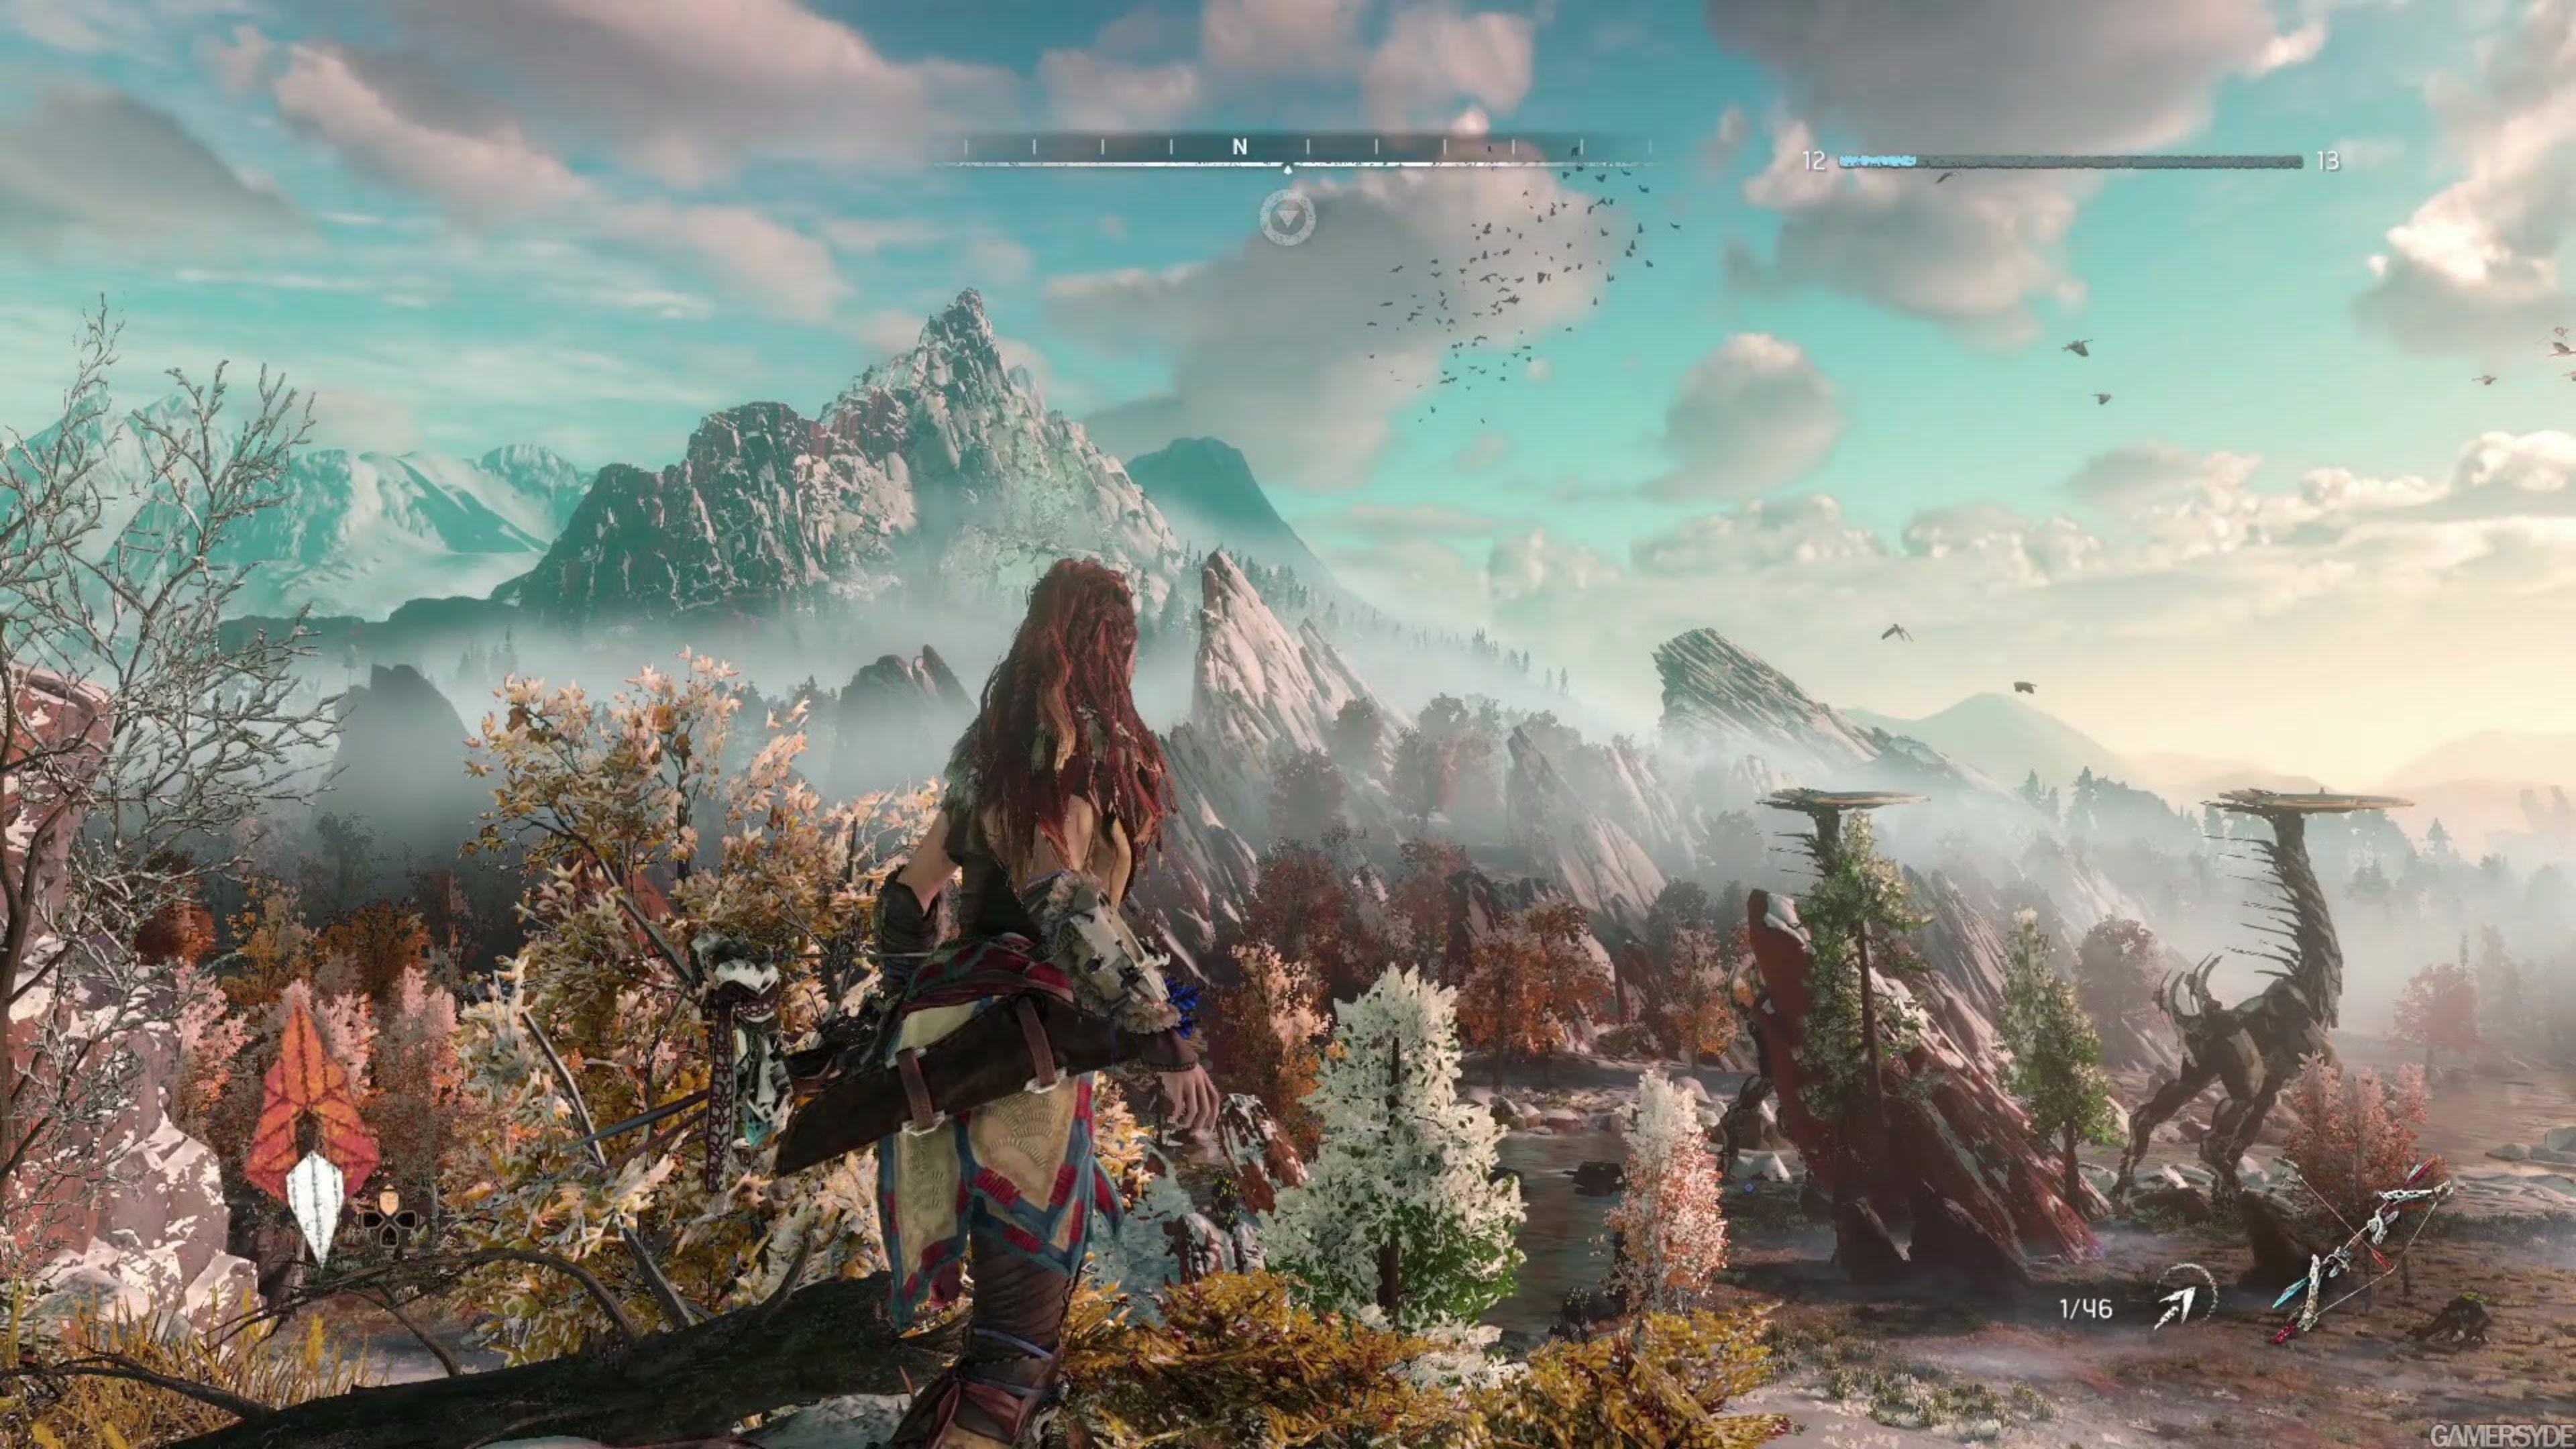 horizonte cero amanecer fondo de pantalla,juego de acción y aventura,juego de pc,cg artwork,captura de pantalla,mitología